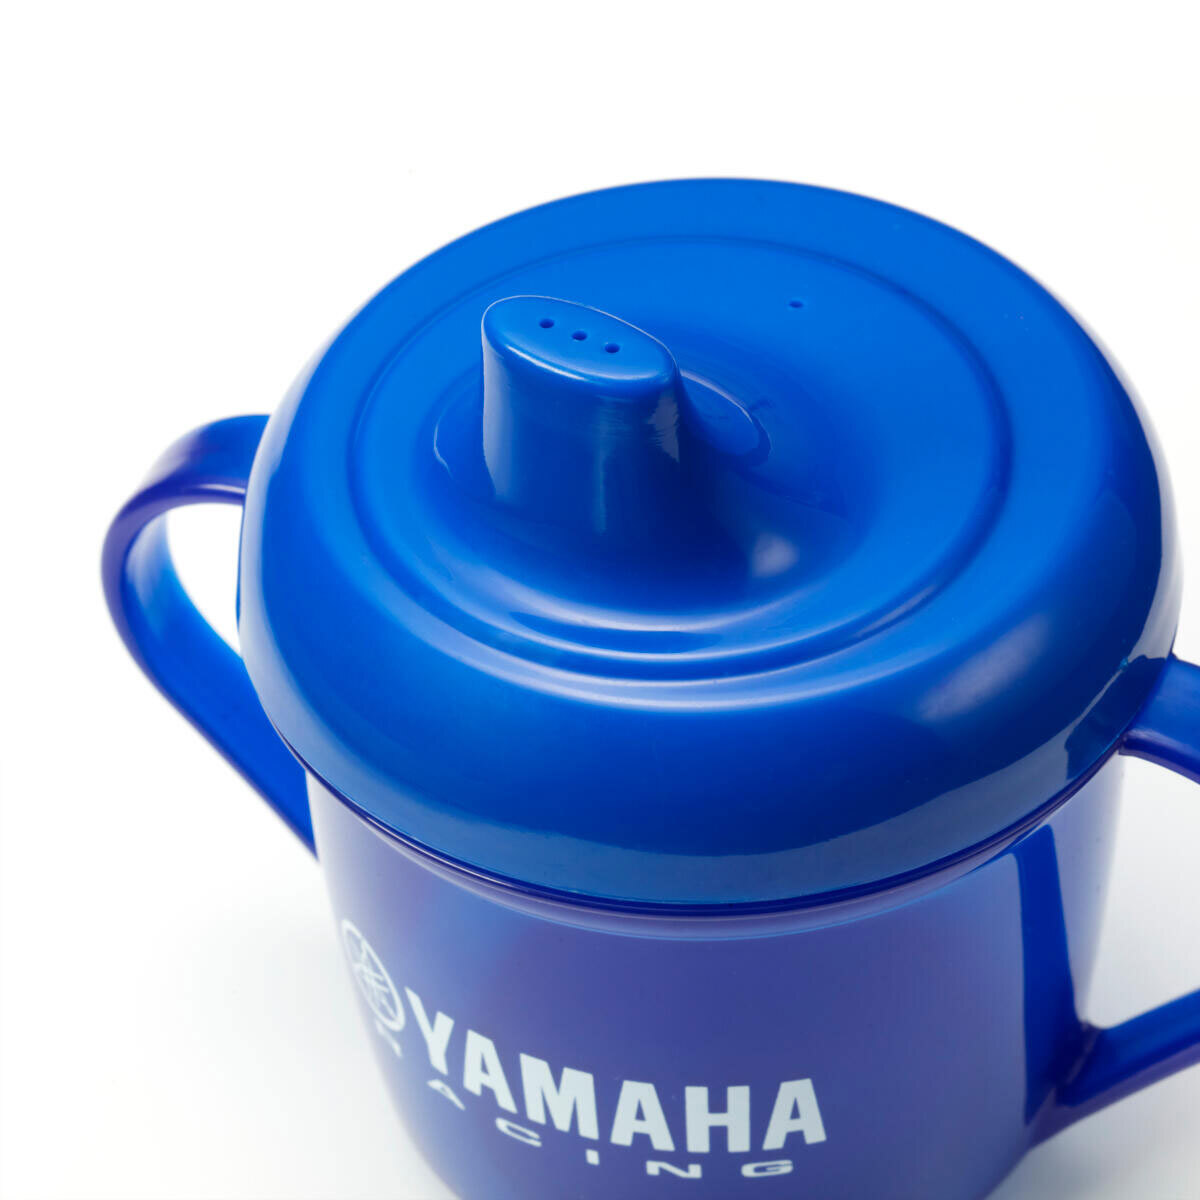 Yamaha Paddock Baby Bib Gift Pack